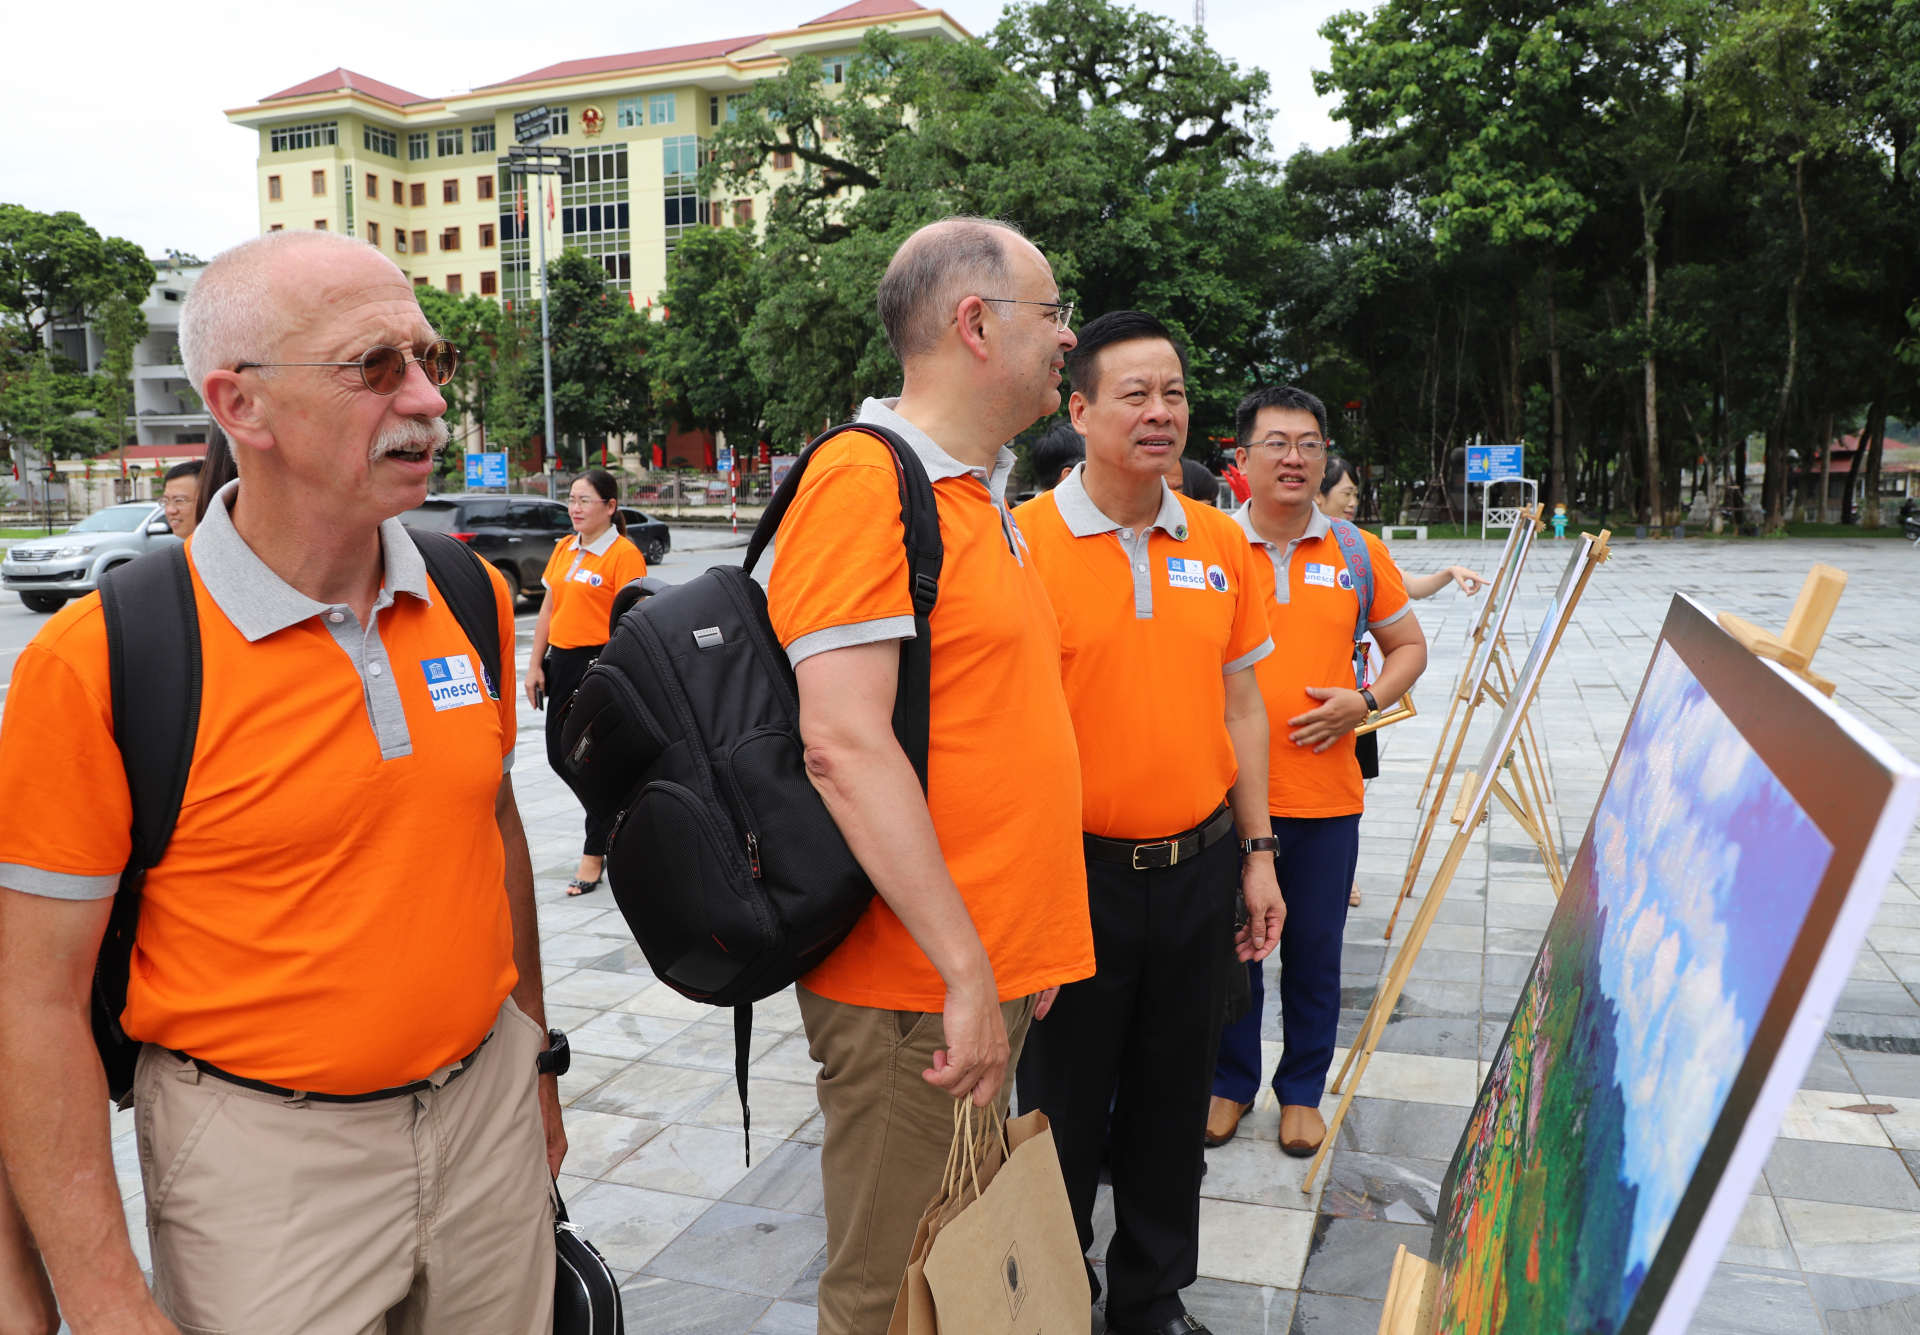 Chủ tịch UBND tỉnh Nguyễn Văn Sơn cùng đoàn công tác thăm quan triển lãm ảnh nghệ thuật CVĐC toàn cầu CNĐ Đồng Văn tại Quảng trường 26.3.